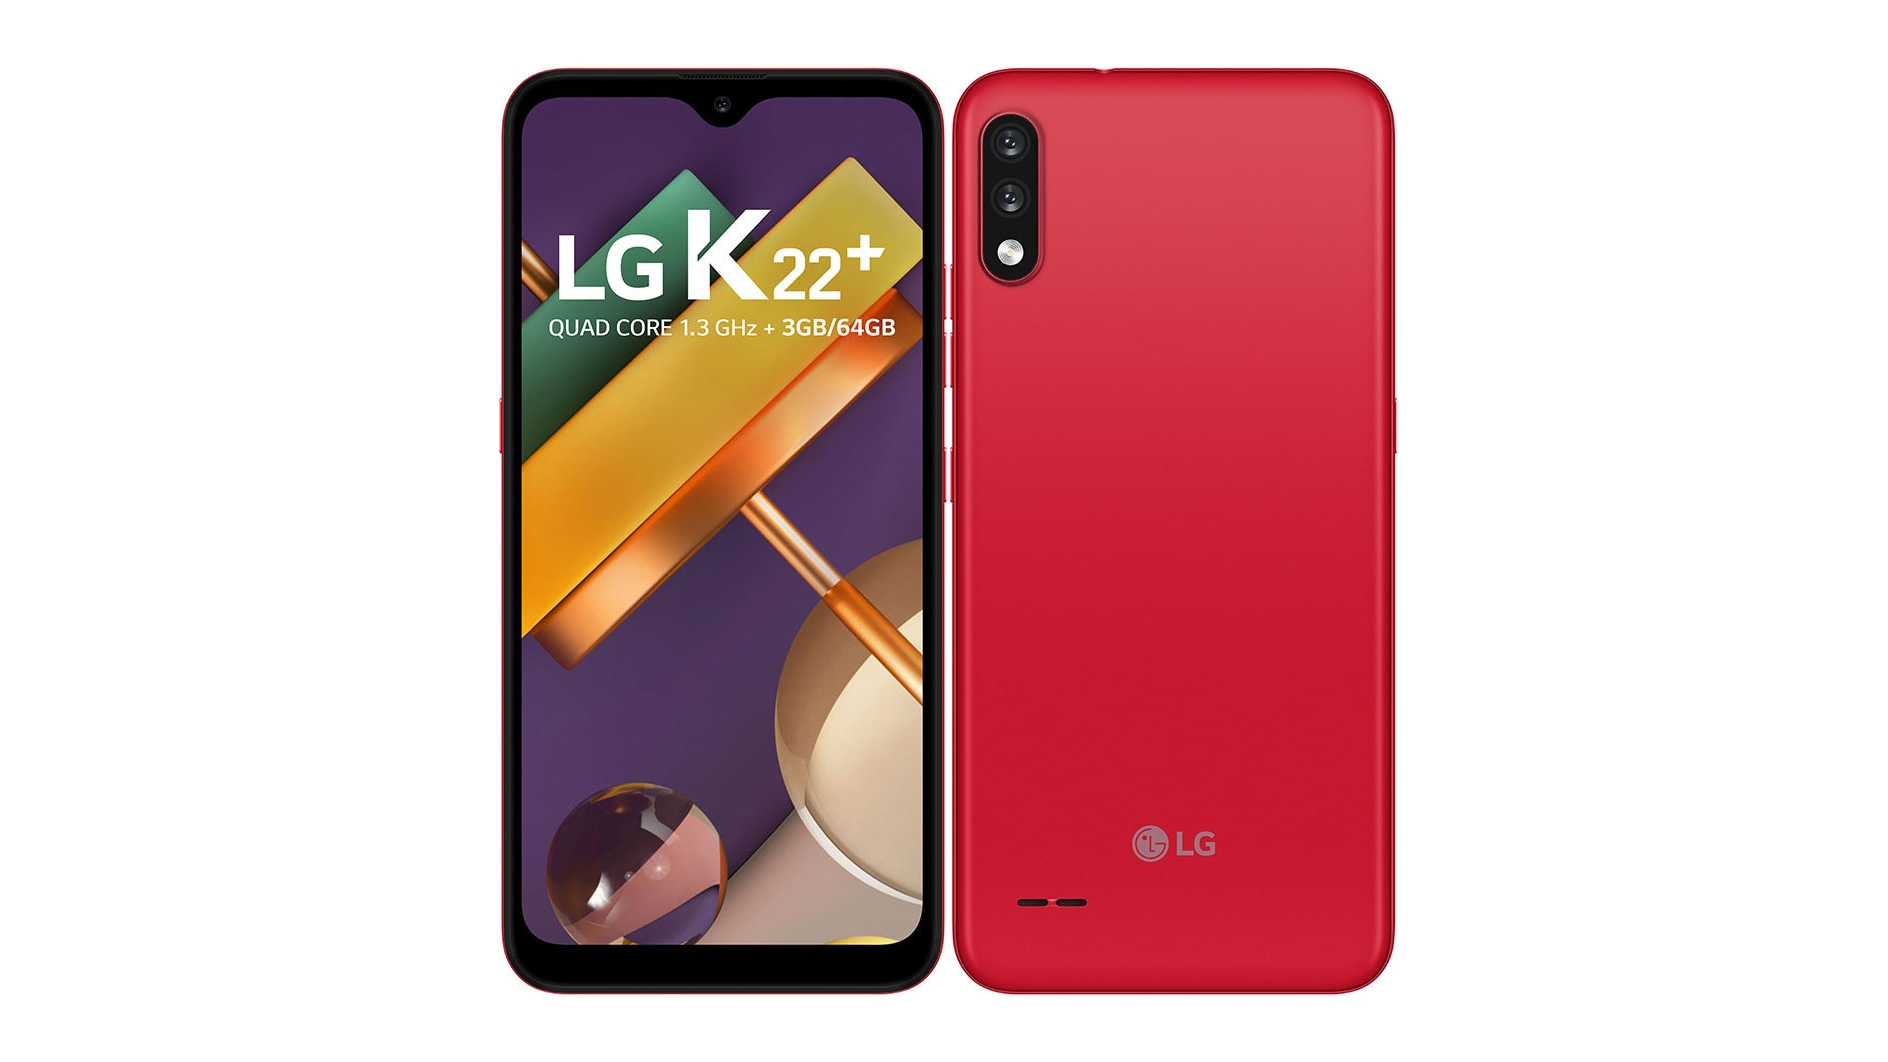 LG k22 plus